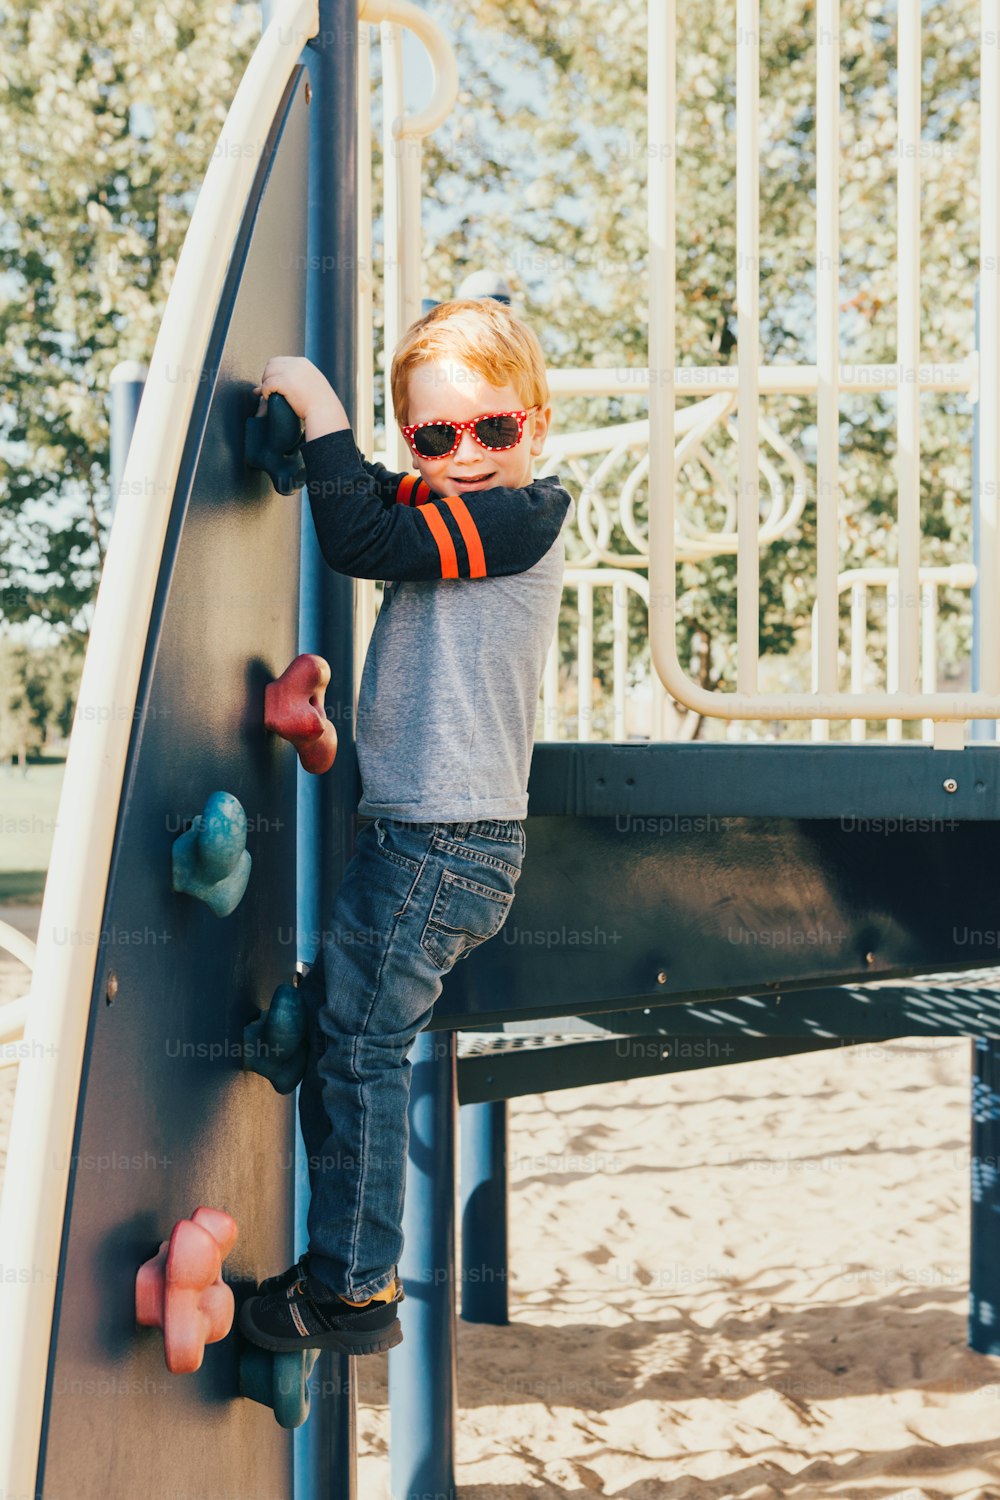 Bambino in età prescolare sorridente felice con occhiali da sole che si arrampica sulla parete rocciosa al parco giochi all'esterno il giorno d'estate. Concetto di stile di vita dell'infanzia felice. Attività stagionale all'aperto per bambini.